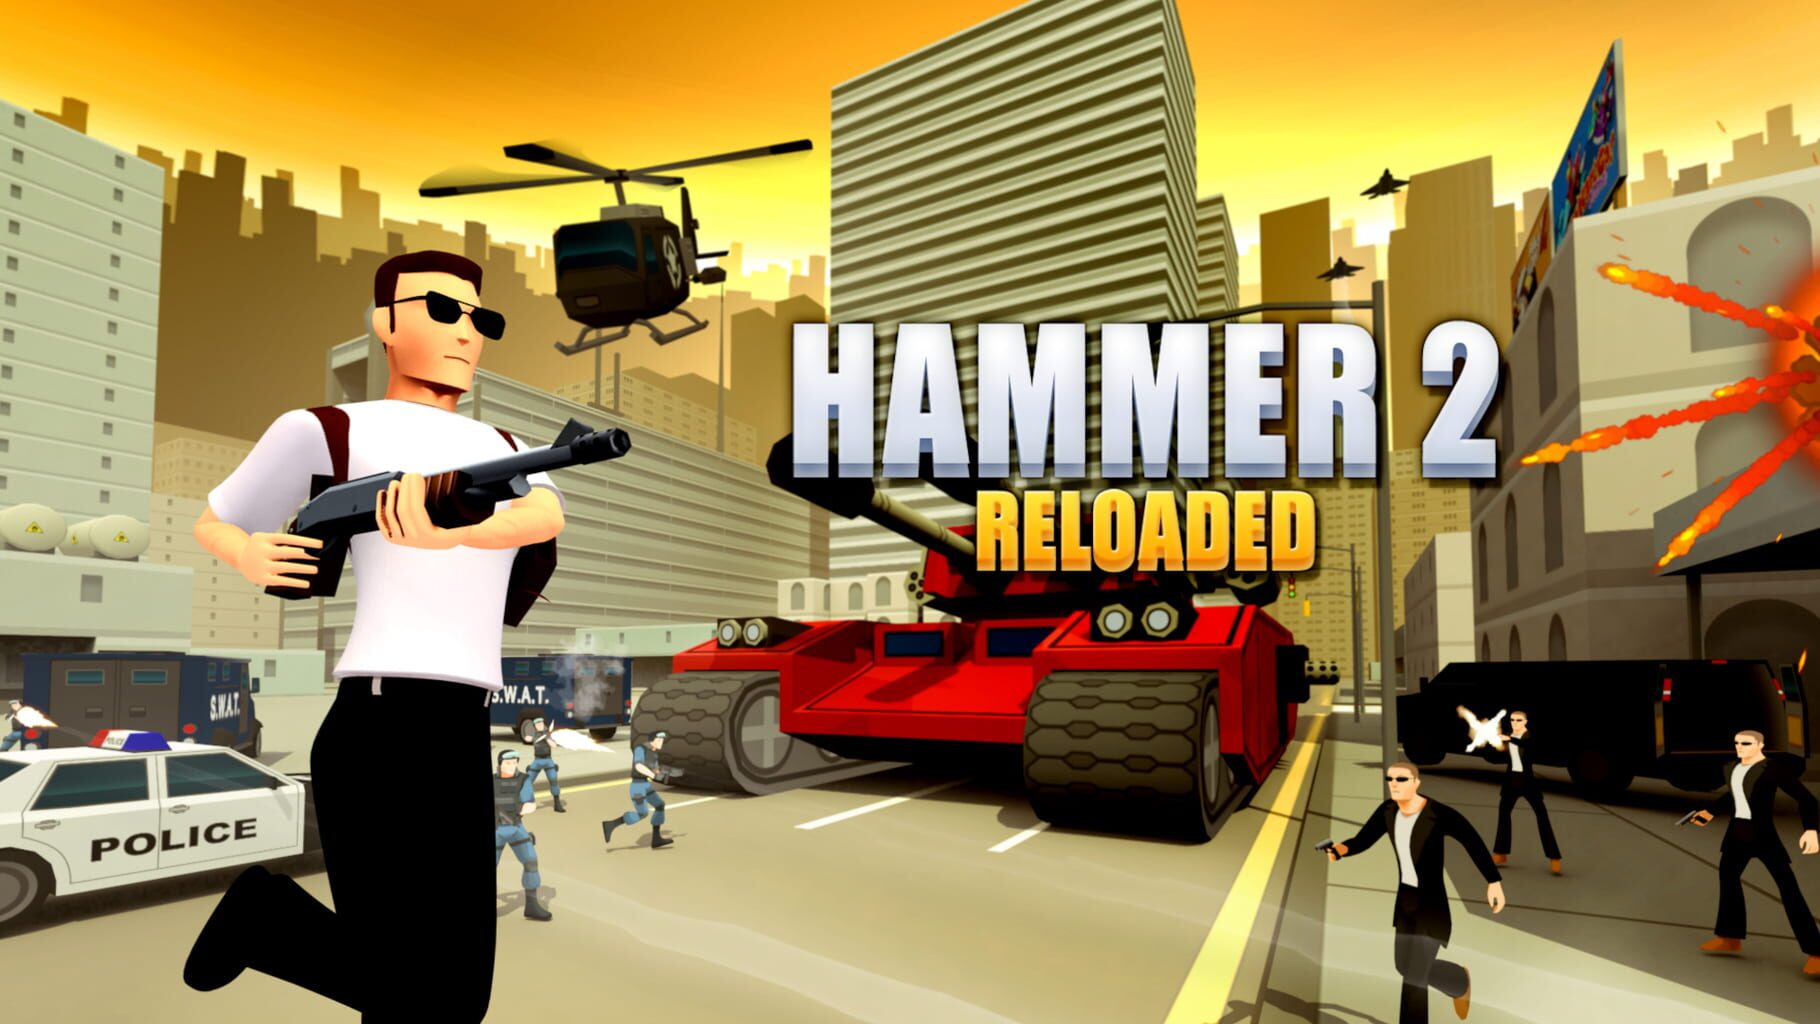 Hammer 2 Reloaded artwork